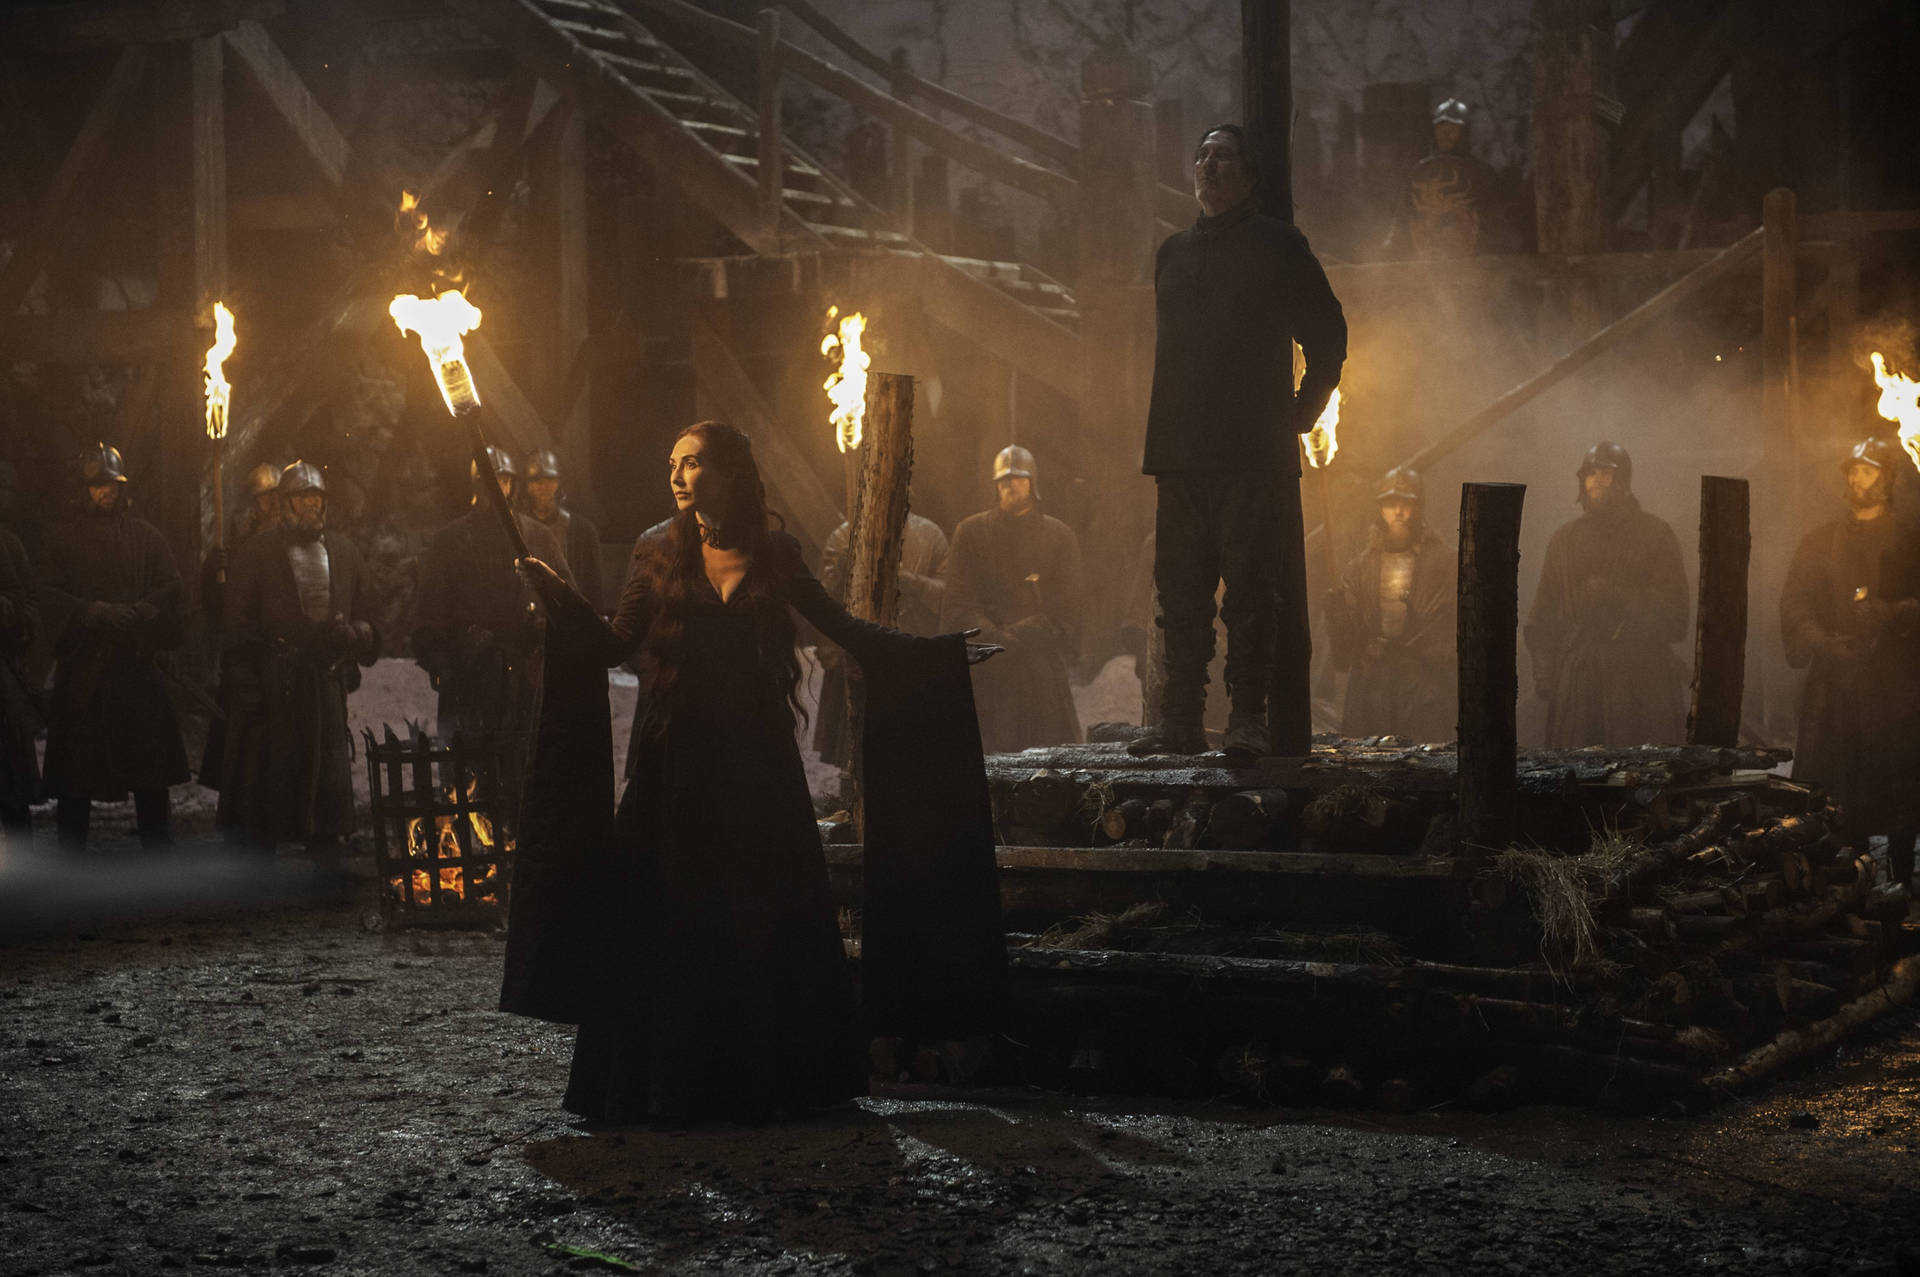 Hexenvon Westeros Unterwandern Ciarán Hinds' Spiel Von Thrones. Wallpaper